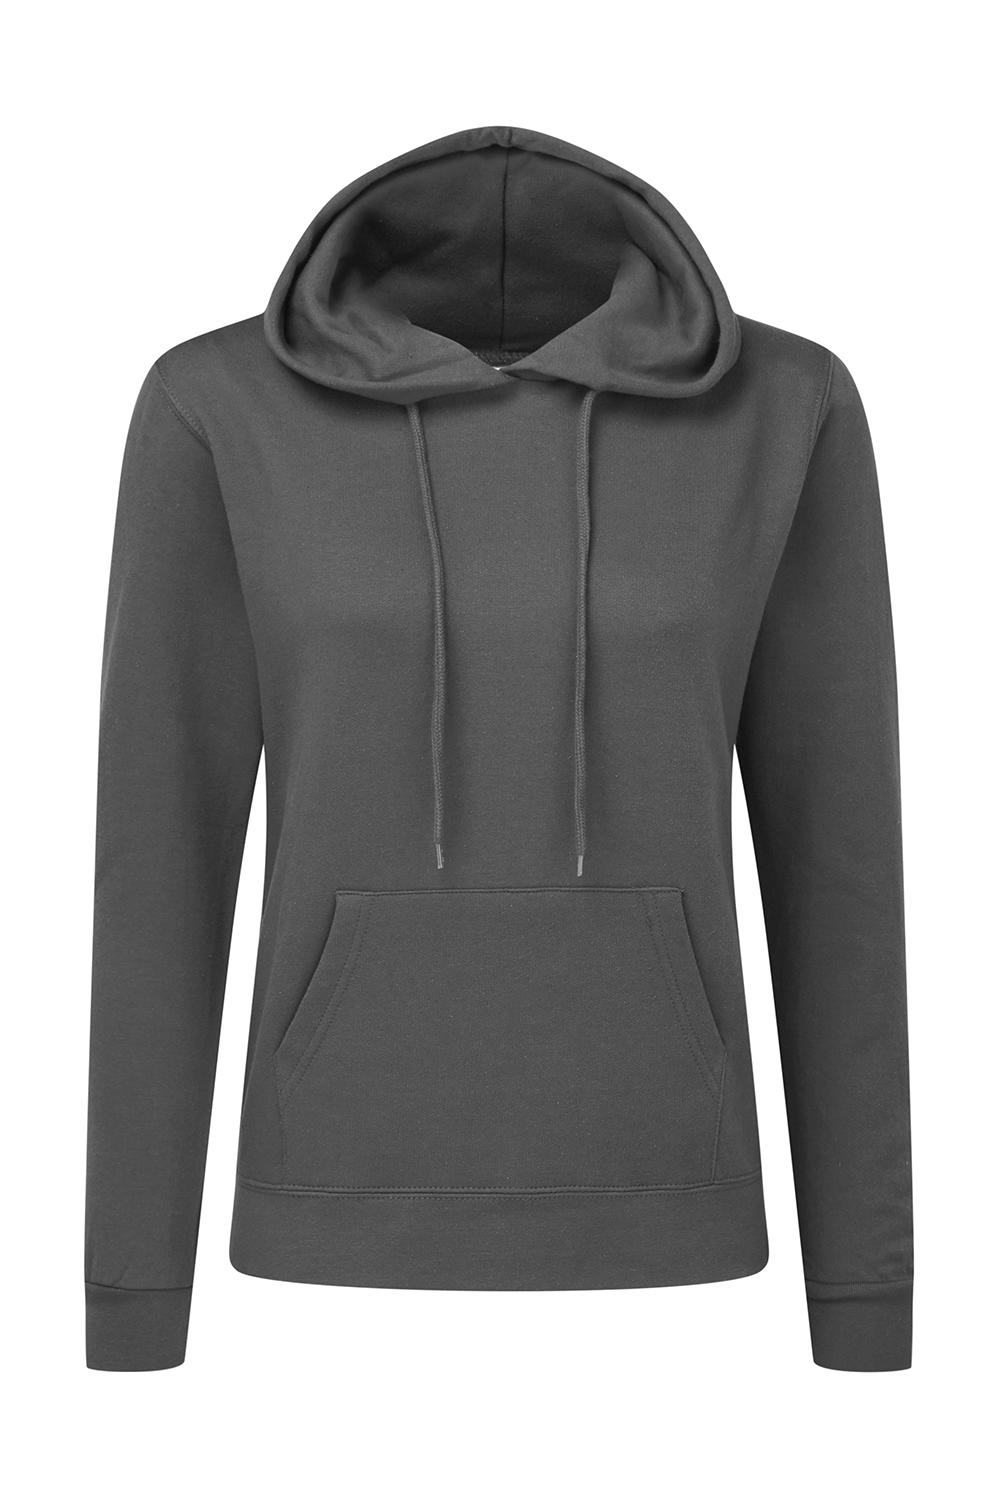  Ladies Hooded Sweatshirt in Farbe Grey